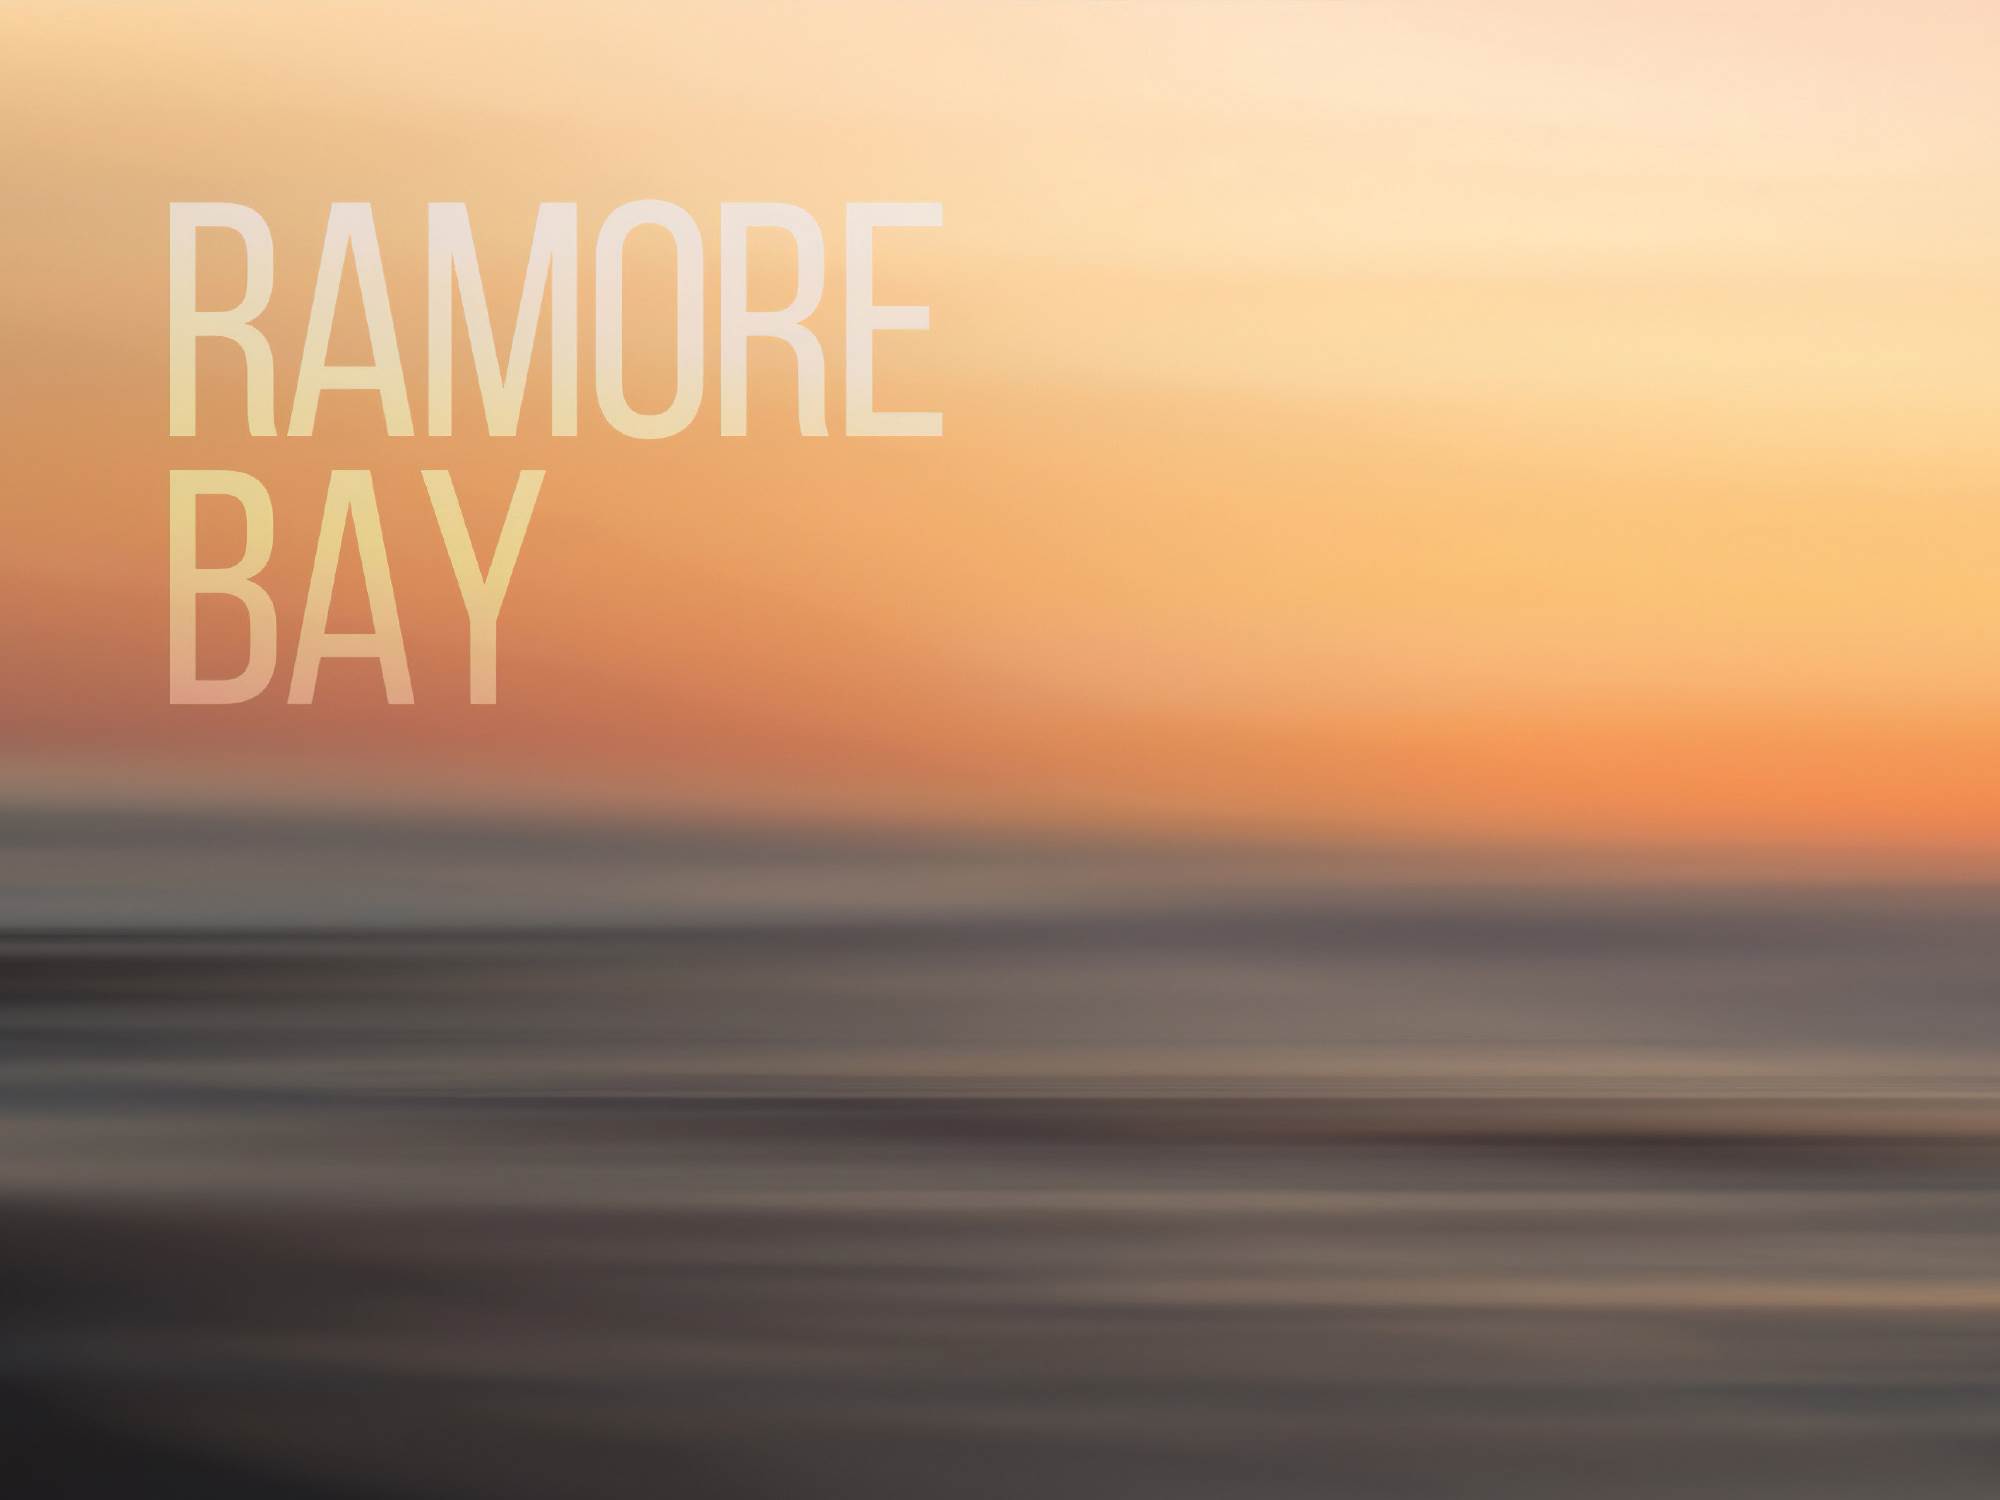 Ramore Bay